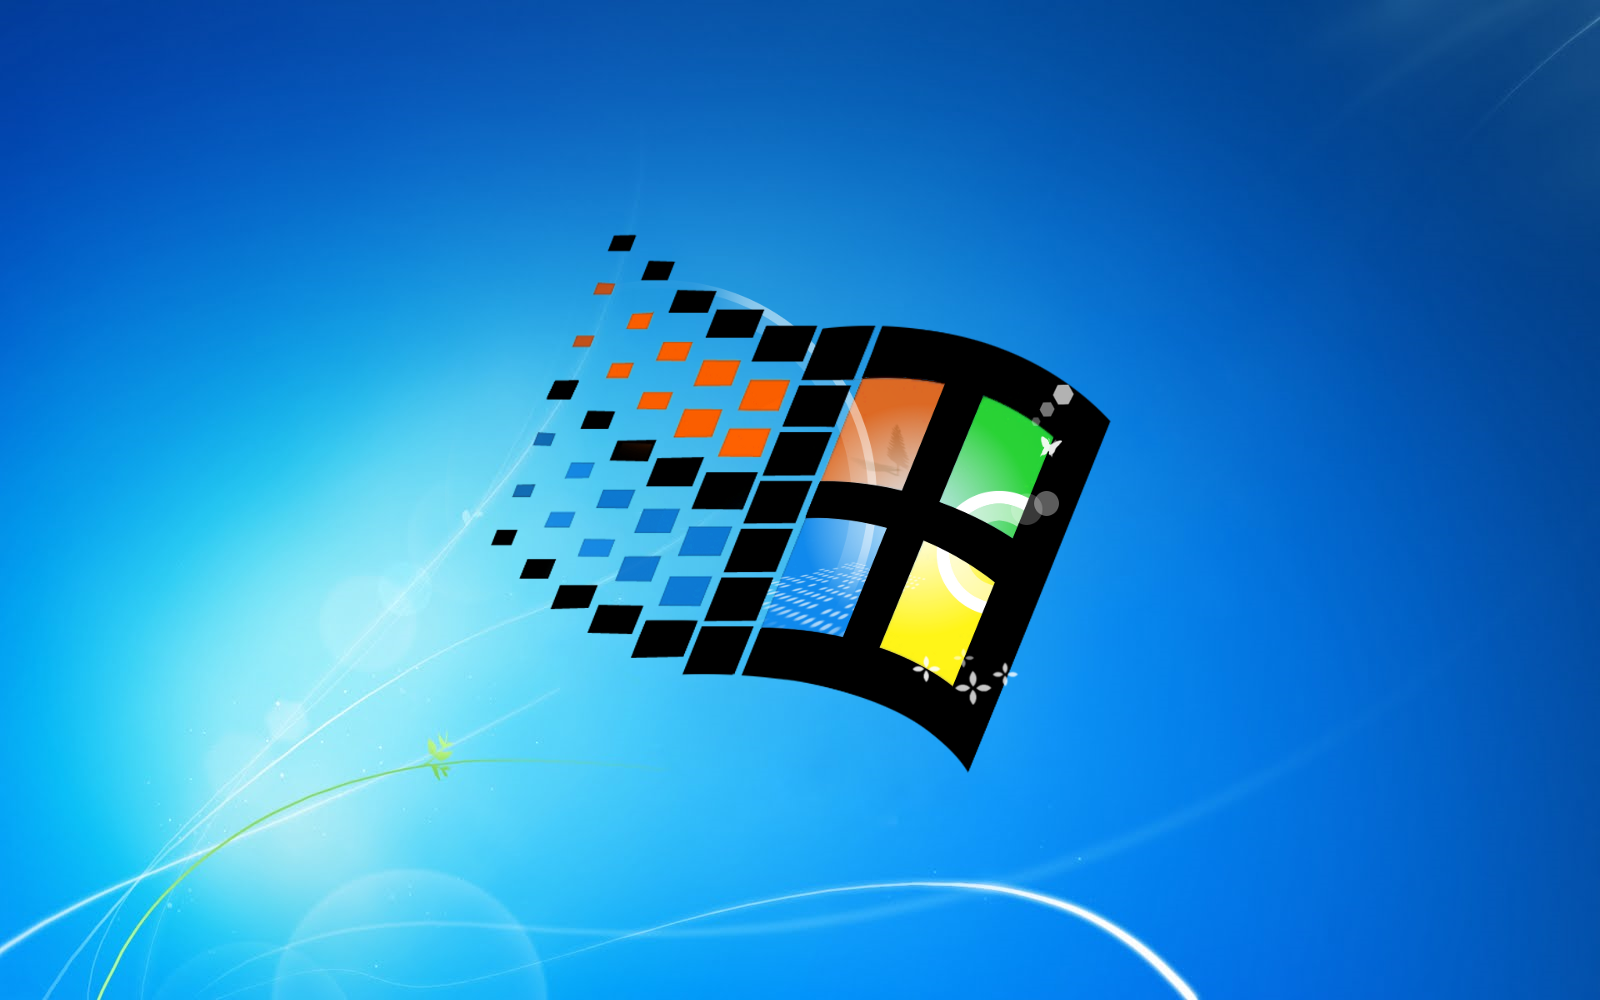 윈도우 95 벽지,운영 체제,그래픽 디자인,폰트,제도법,루빅스 큐브